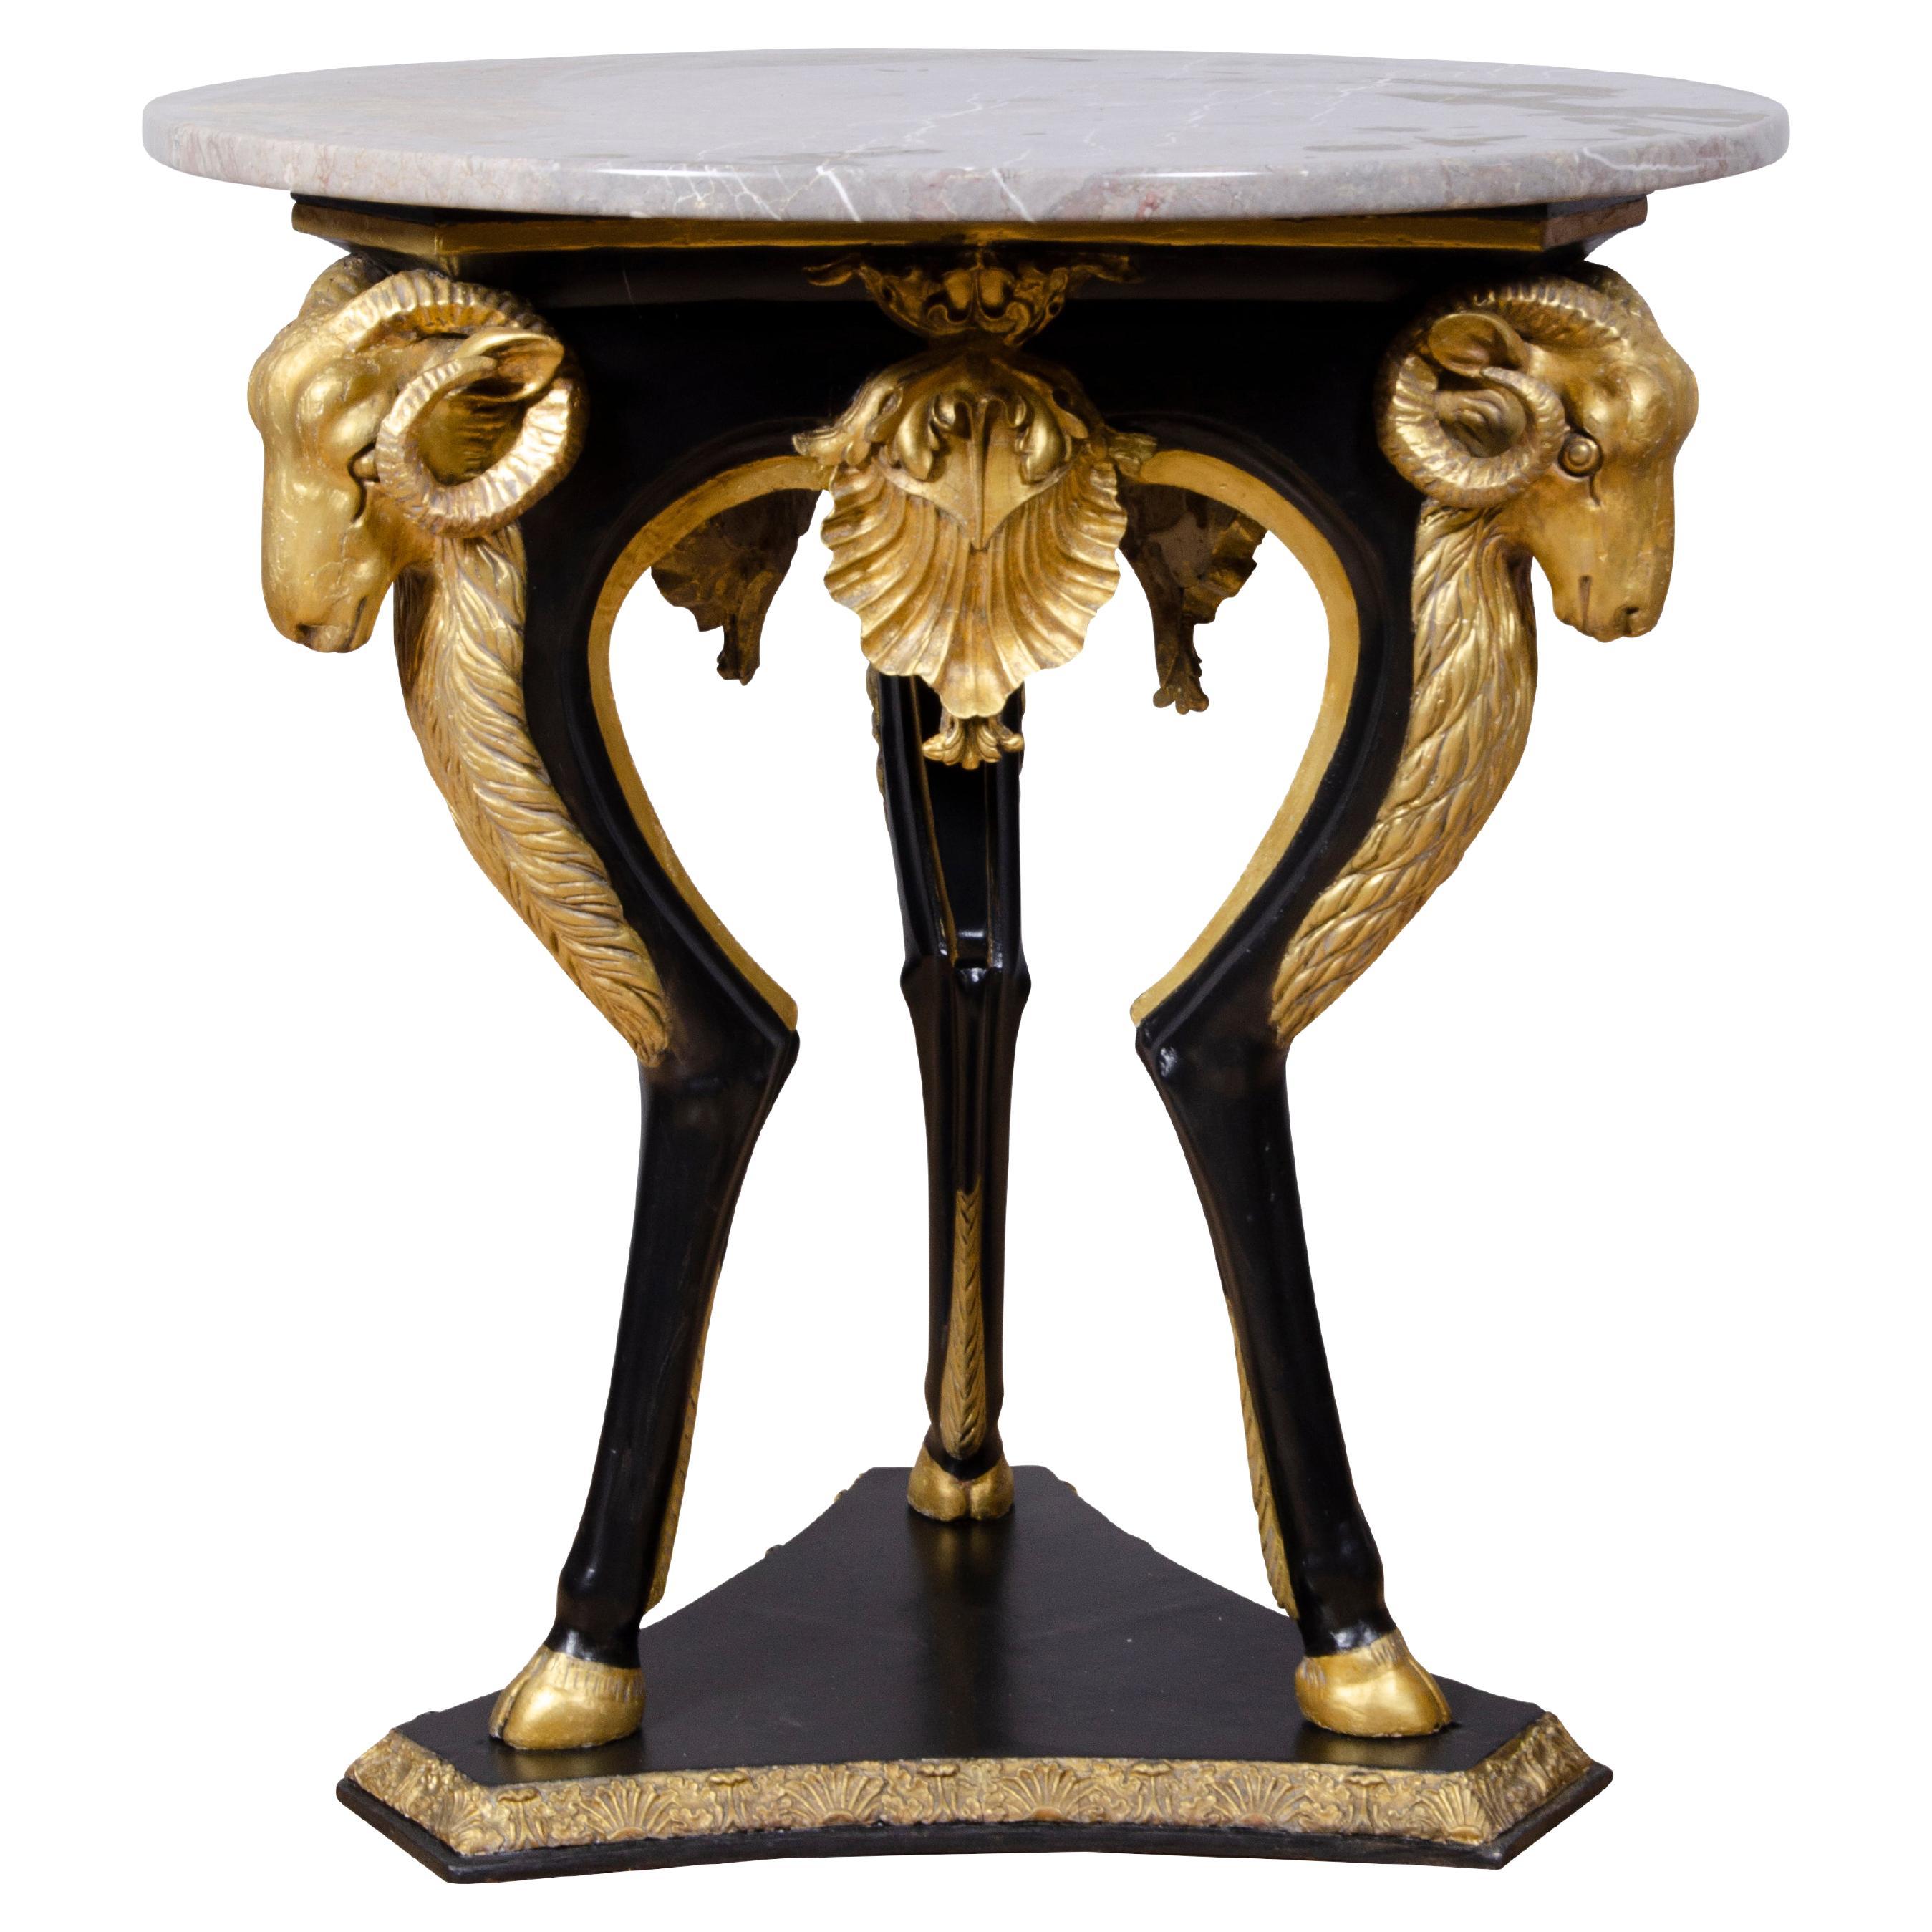 Table centrale néoclassique suédoise en bois ébénisé et doré de style néoclassique